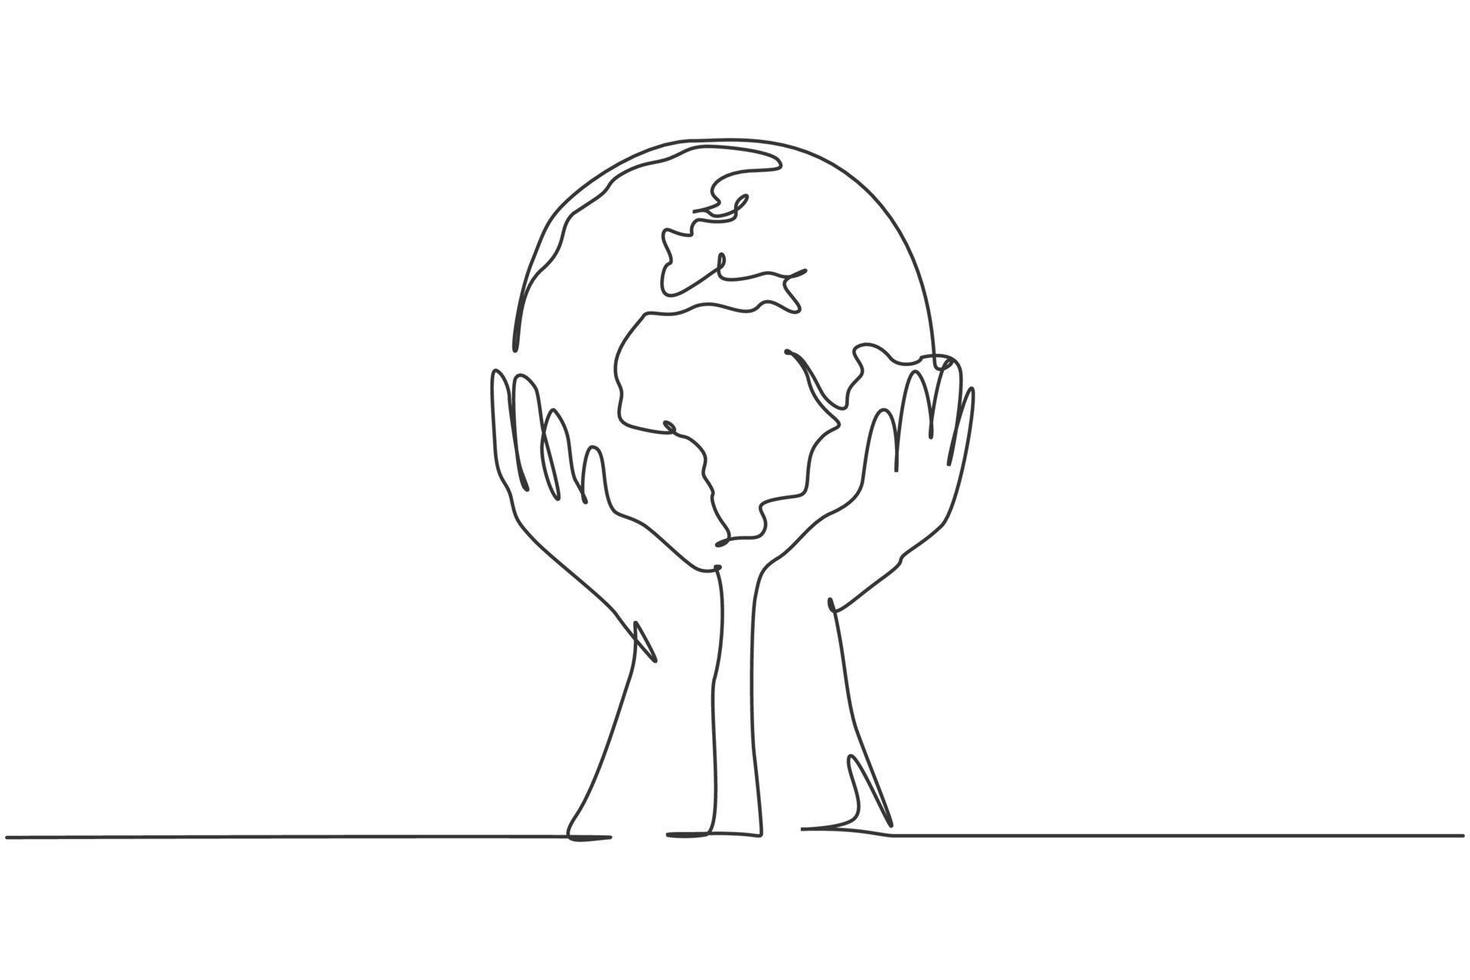 le mani tengono la terra. icona grafica della mappa globale del mondo a linea continua singola. semplice doodle di una linea per il concetto di organizzazione senza scopo di lucro. illustrazione vettoriale isolato design minimalista su sfondo bianco